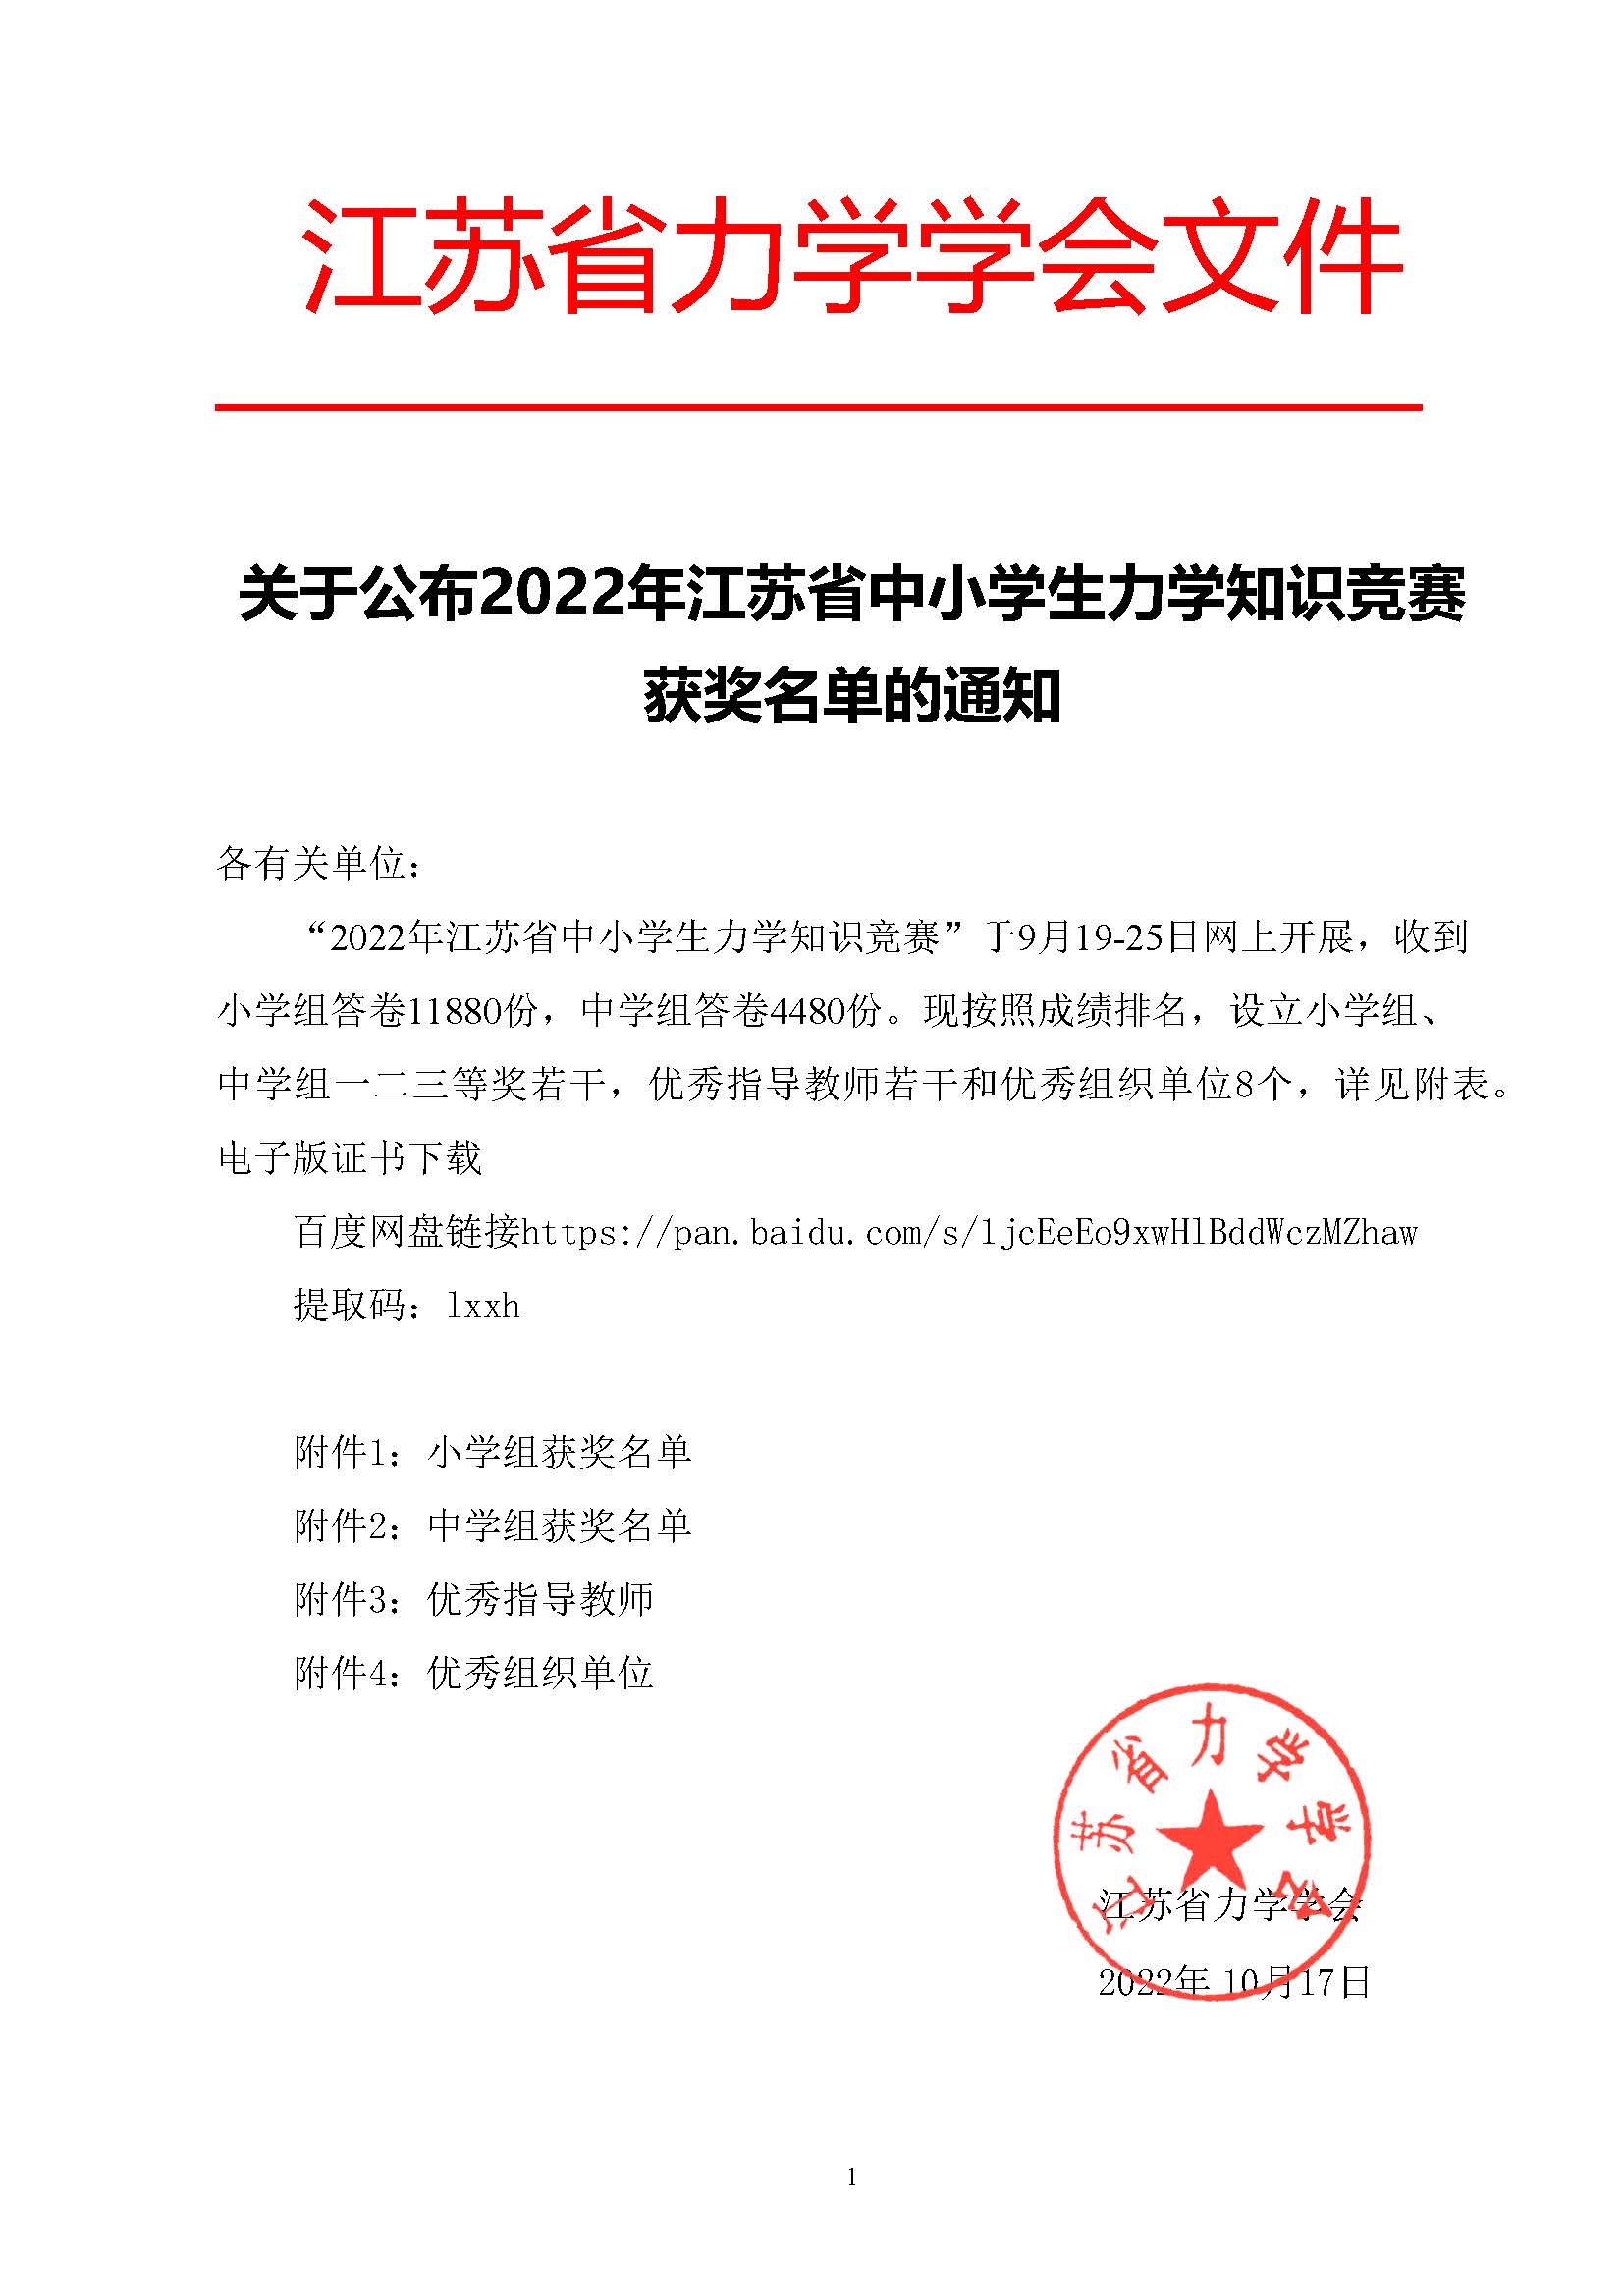 关于公布2022年江苏省中小学生力学知识竞赛获奖的通知2022.11.17.jpg